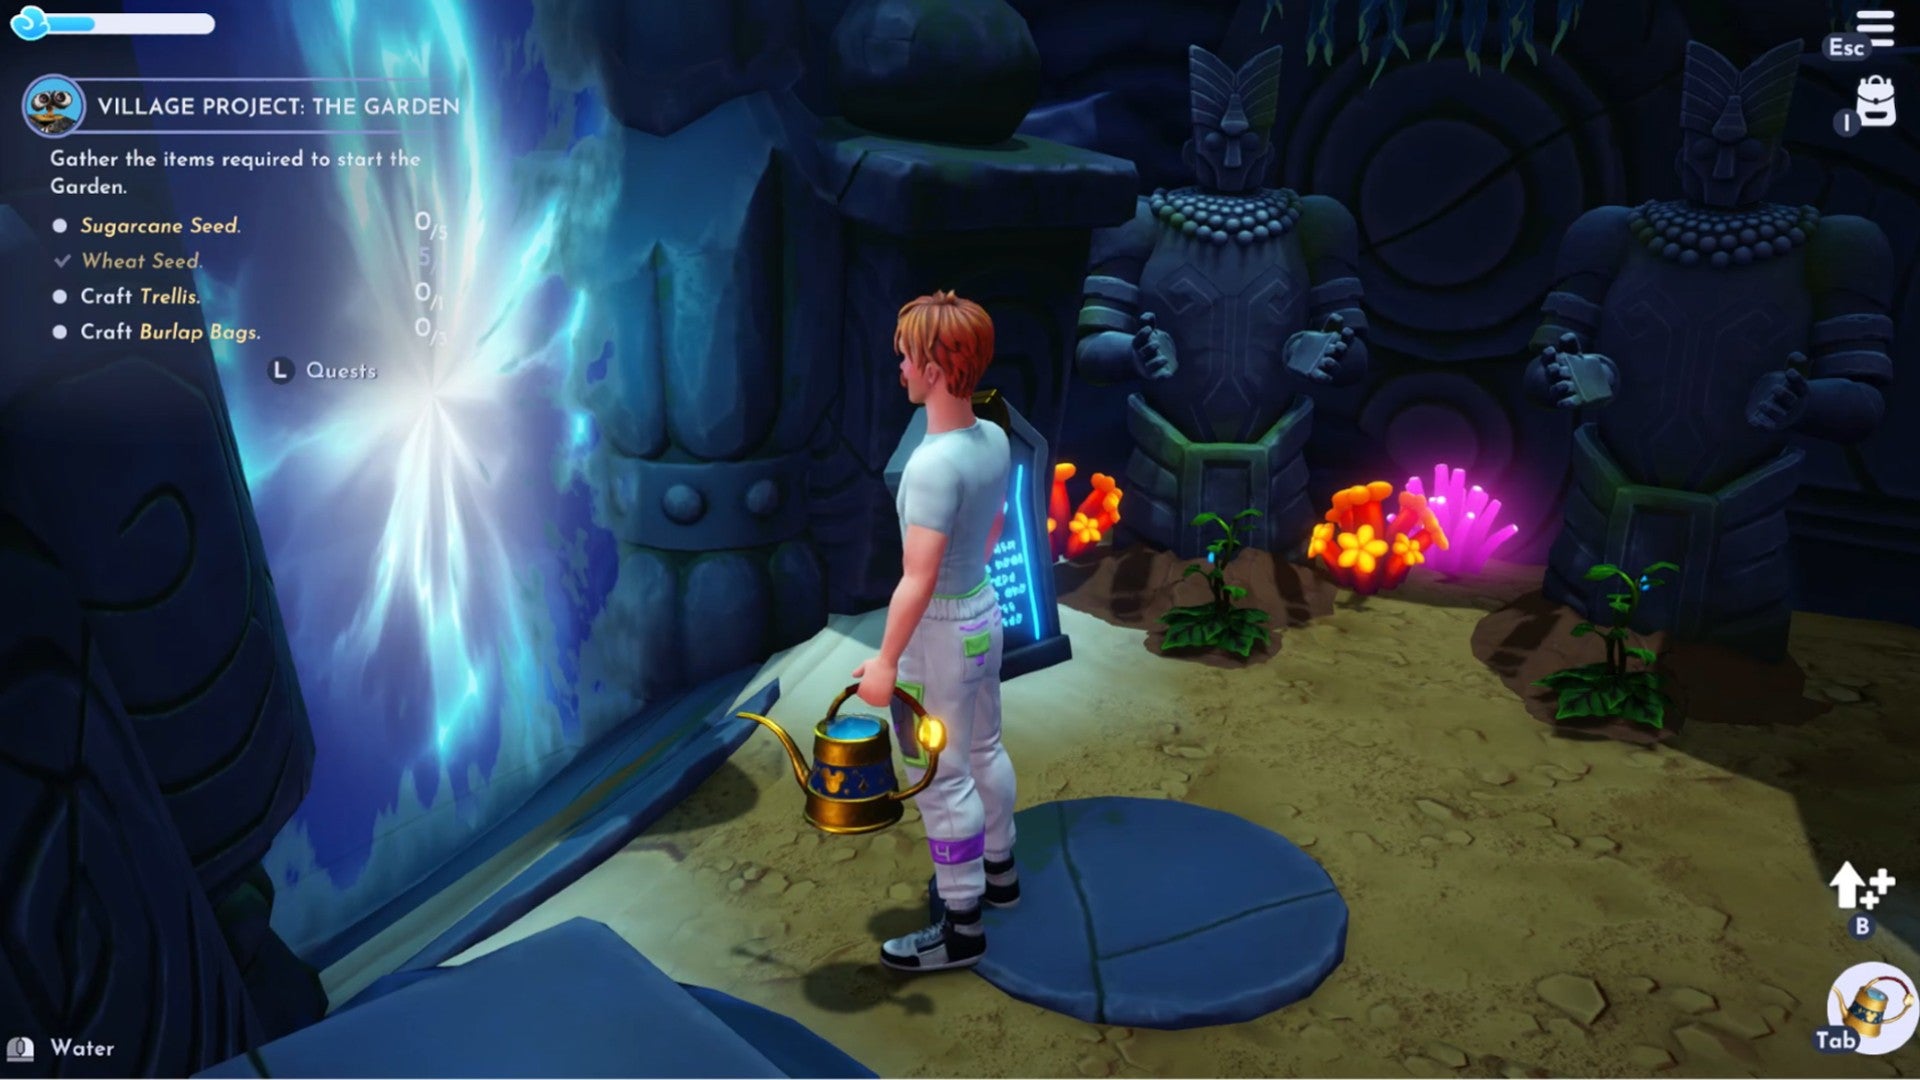 Captura de pantalla de Disney Dreamlight Valley que muestra al jugador mirando una barrera mágica azul en una cueva oscura.  El suelo es arenoso y hay cultivos creciendo al fondo.